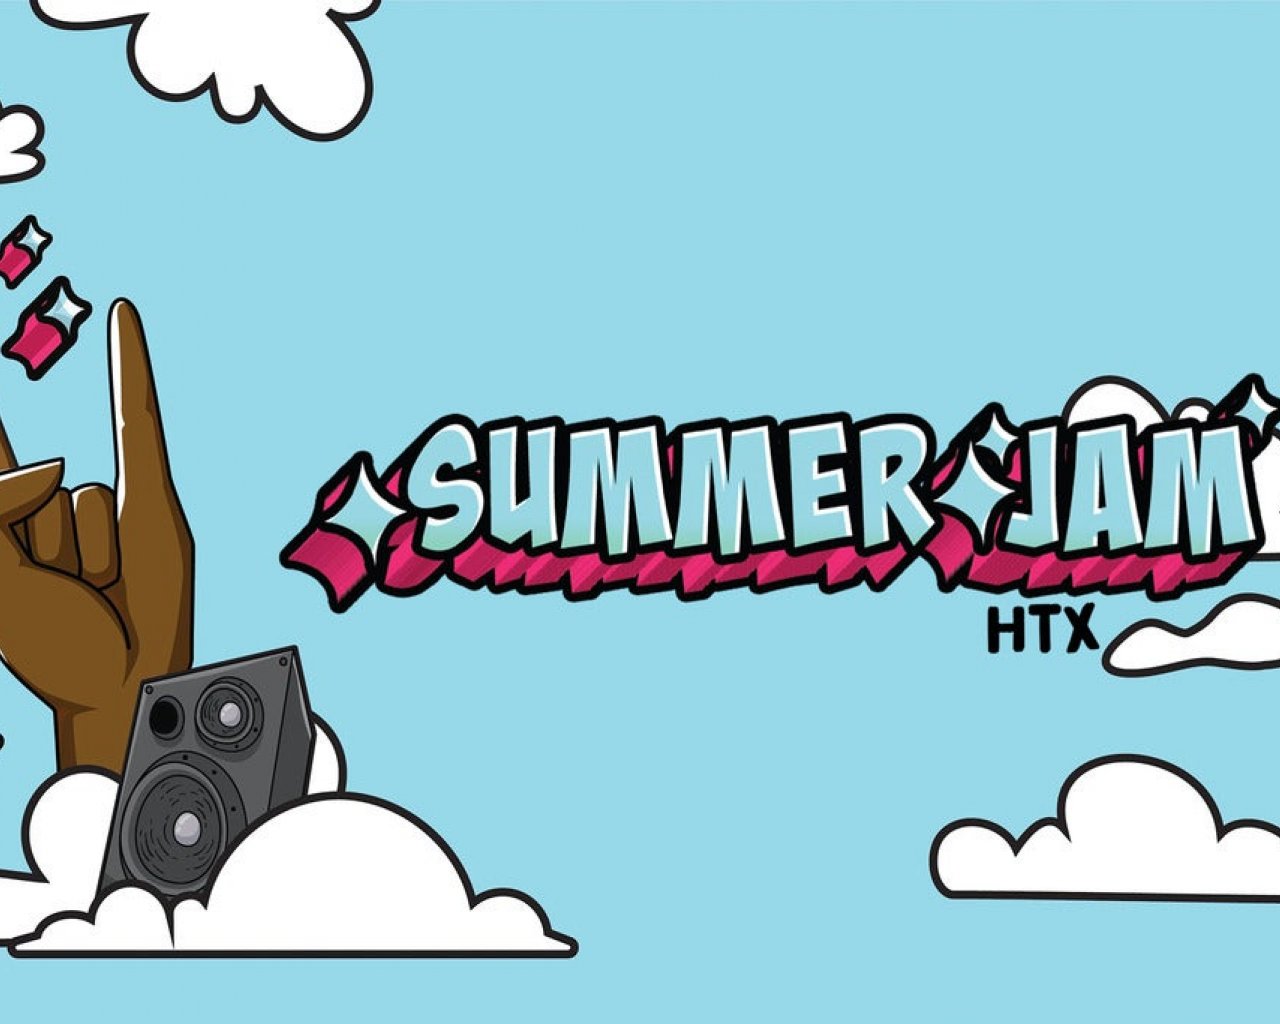 Summer Jam HTX